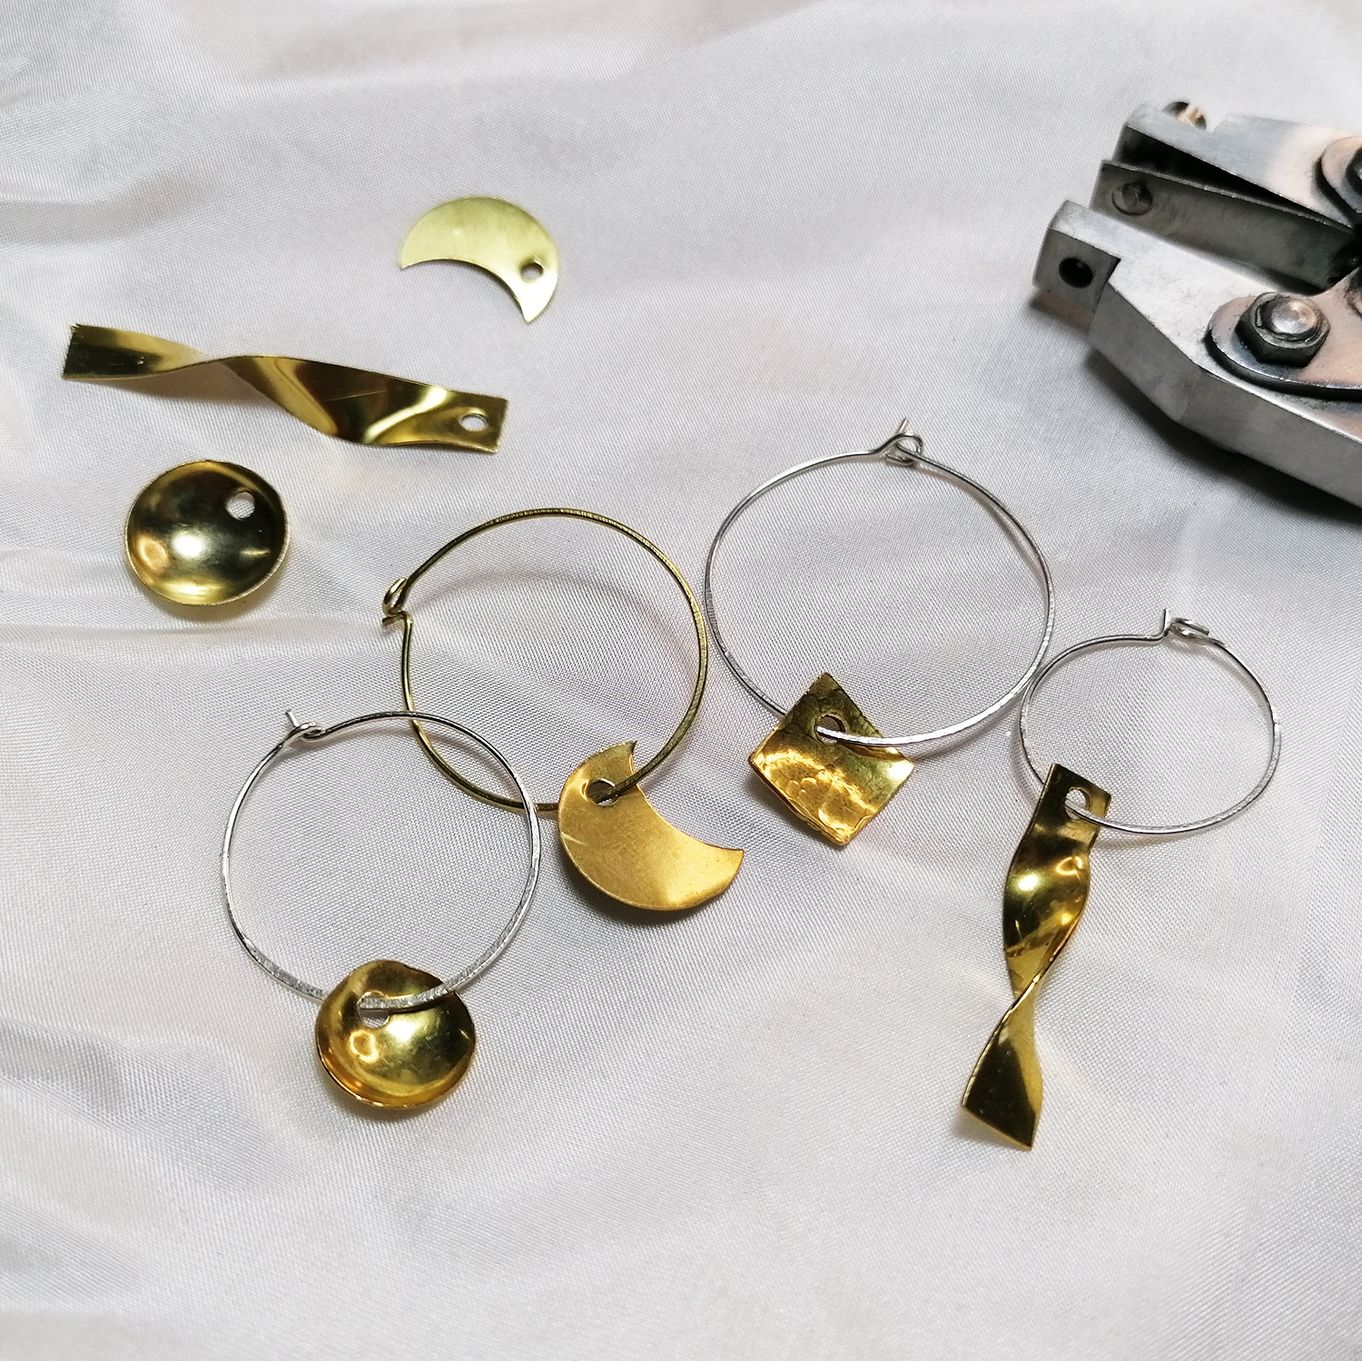 DIY Hoop Earrings / Wine Charm Rings Wire Jewelry Tutorial 